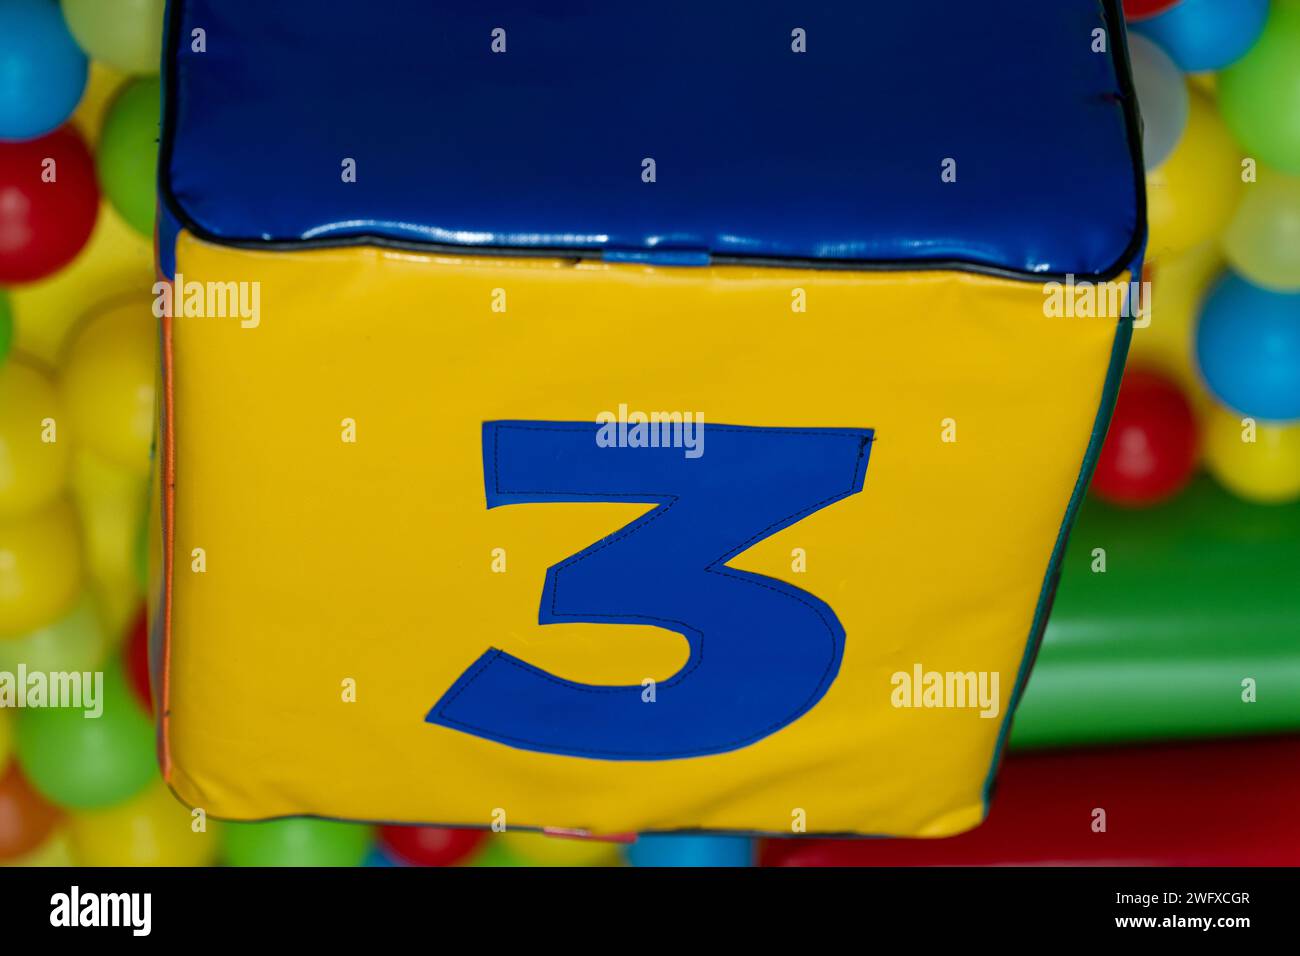 Numéro trois, couleur bleue sur fond jaune. Partie de la forme carrée de matériau en caoutchouc. Aire de jeux pour enfants. Banque D'Images